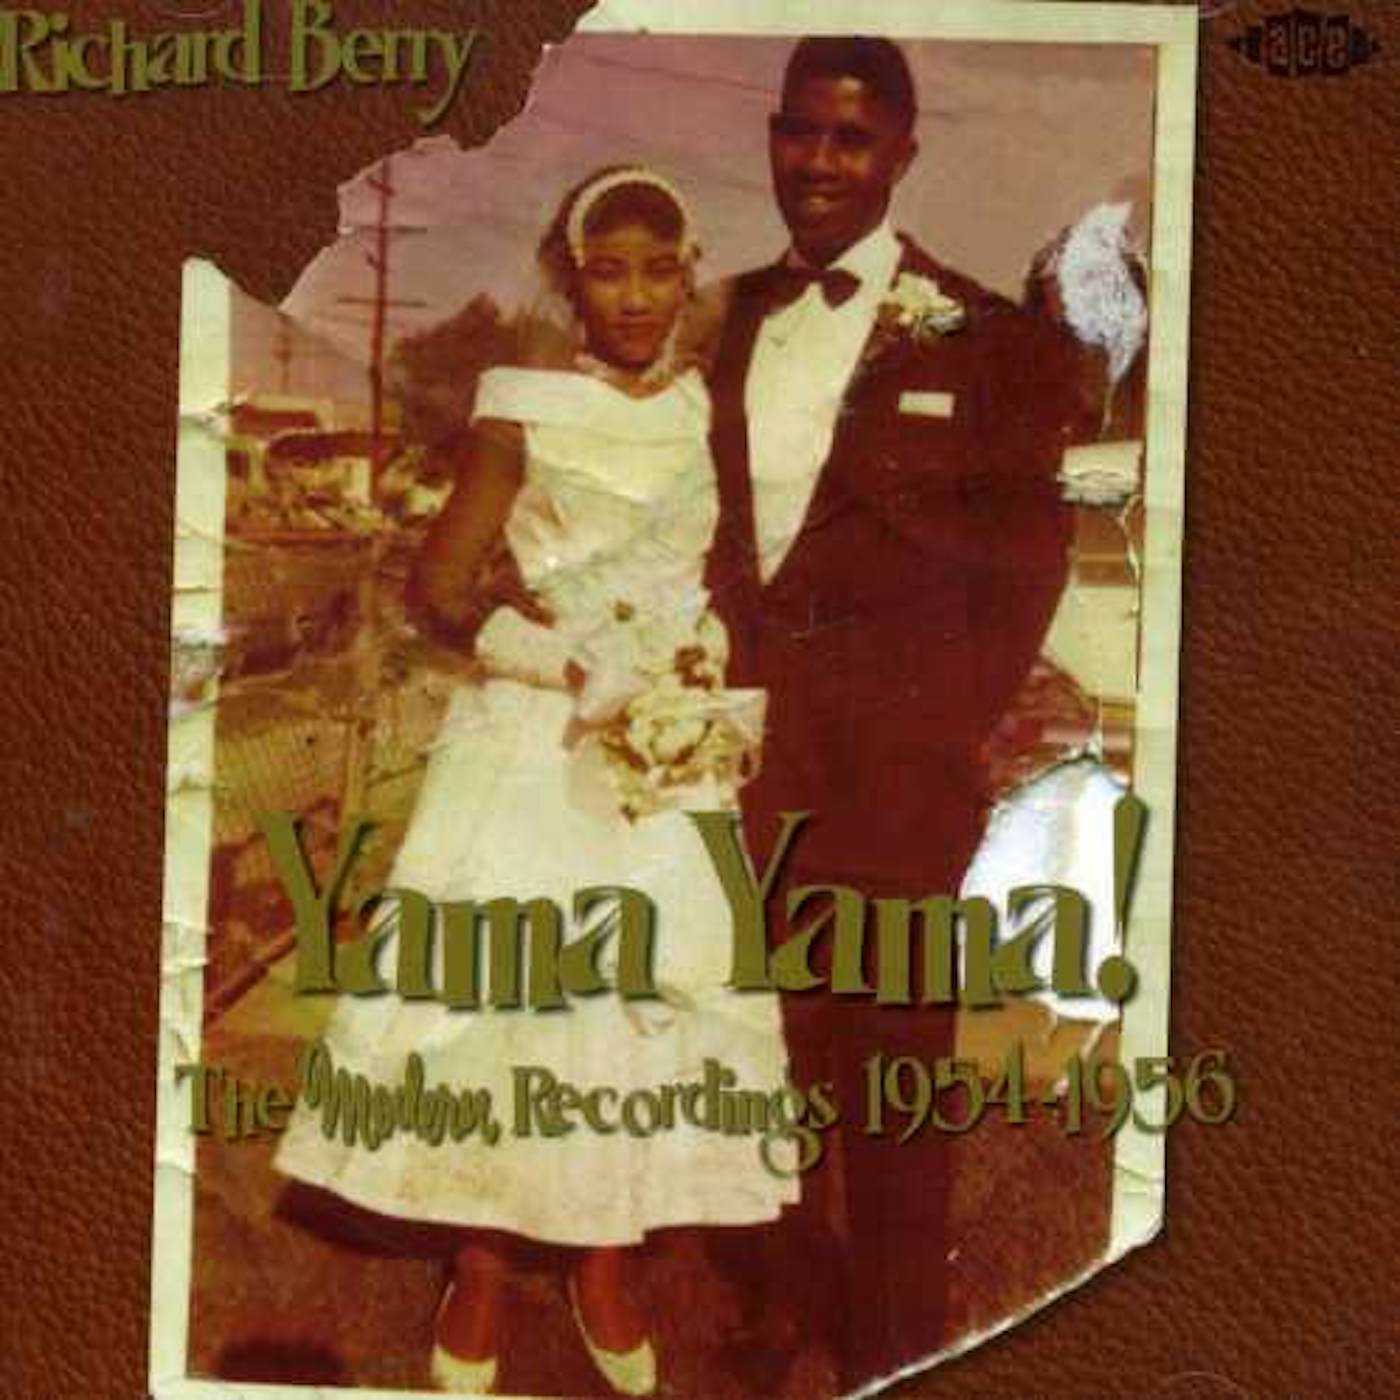 Richard Berry YAMA YAMA MODERN RECORDINGS 1954-1956 CD